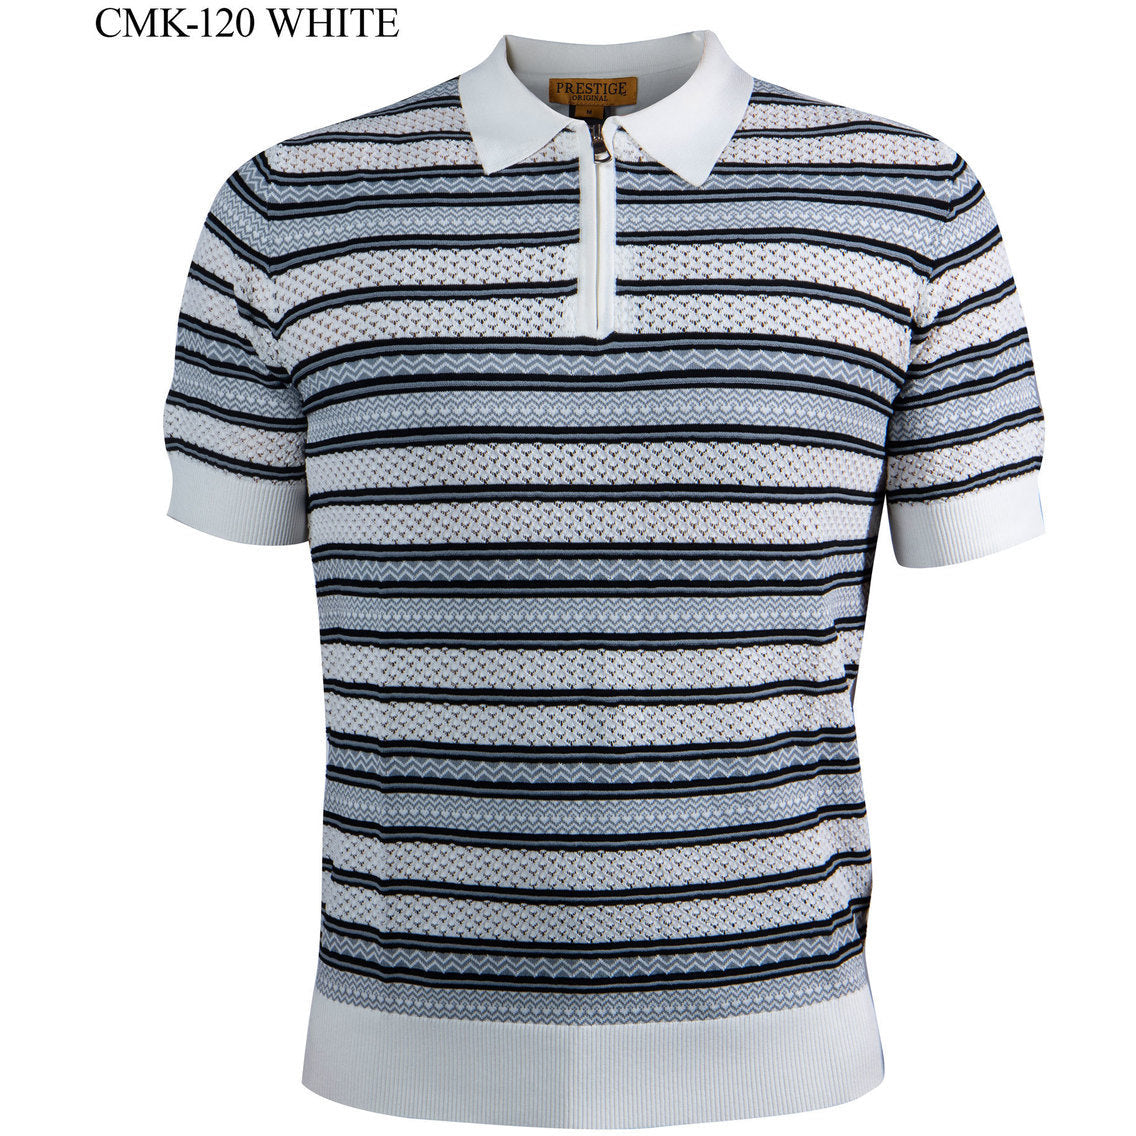 Prestige White Black Gray Luxury Knit Shirt CMK-120-WHITE